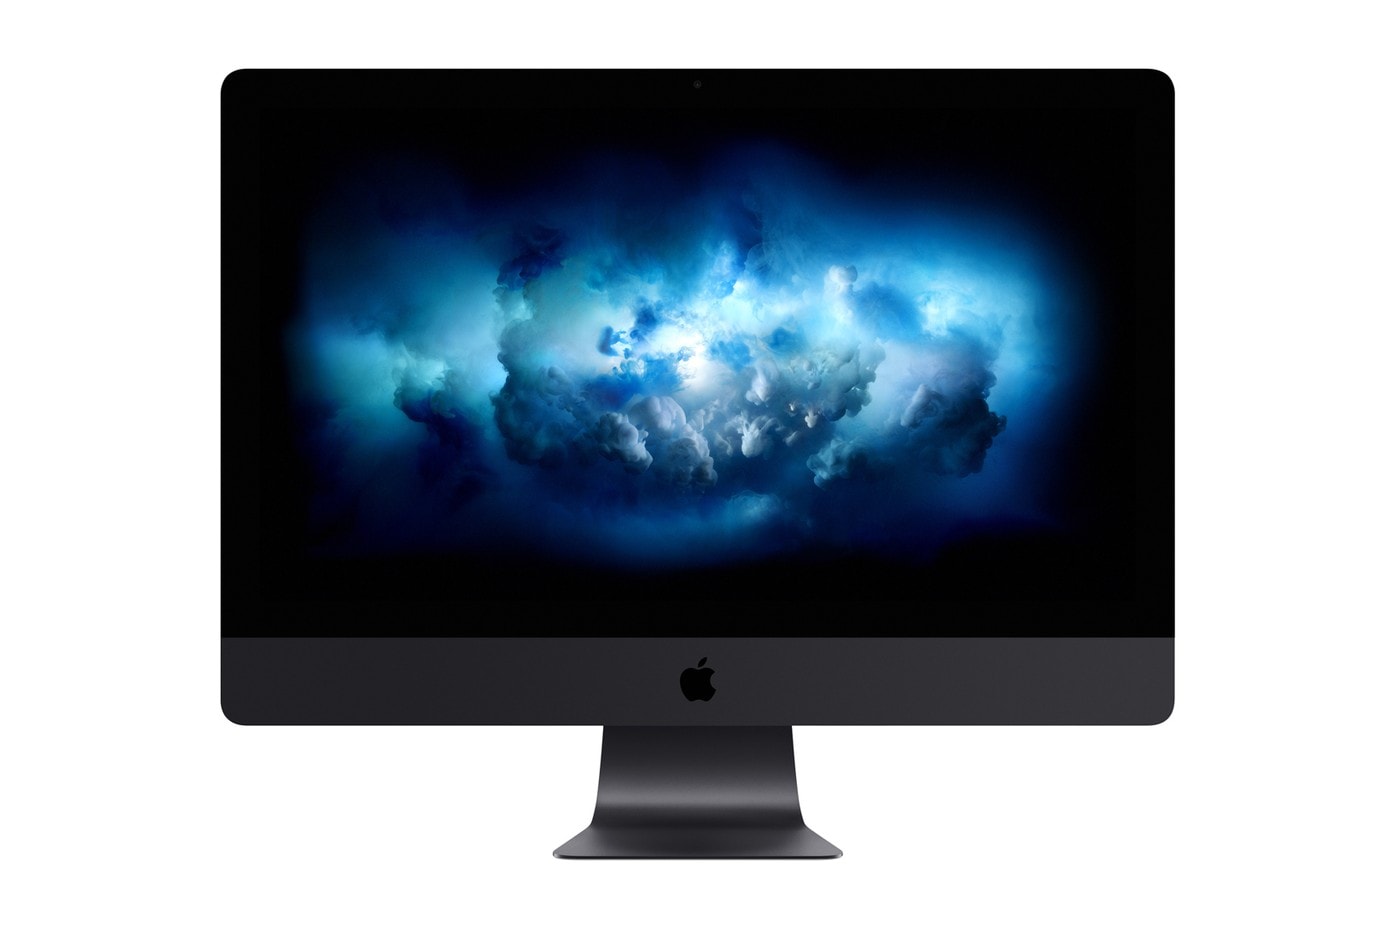 傳聞 Apple 停產 27 吋 iMac 後將不再推出更大尺寸版本